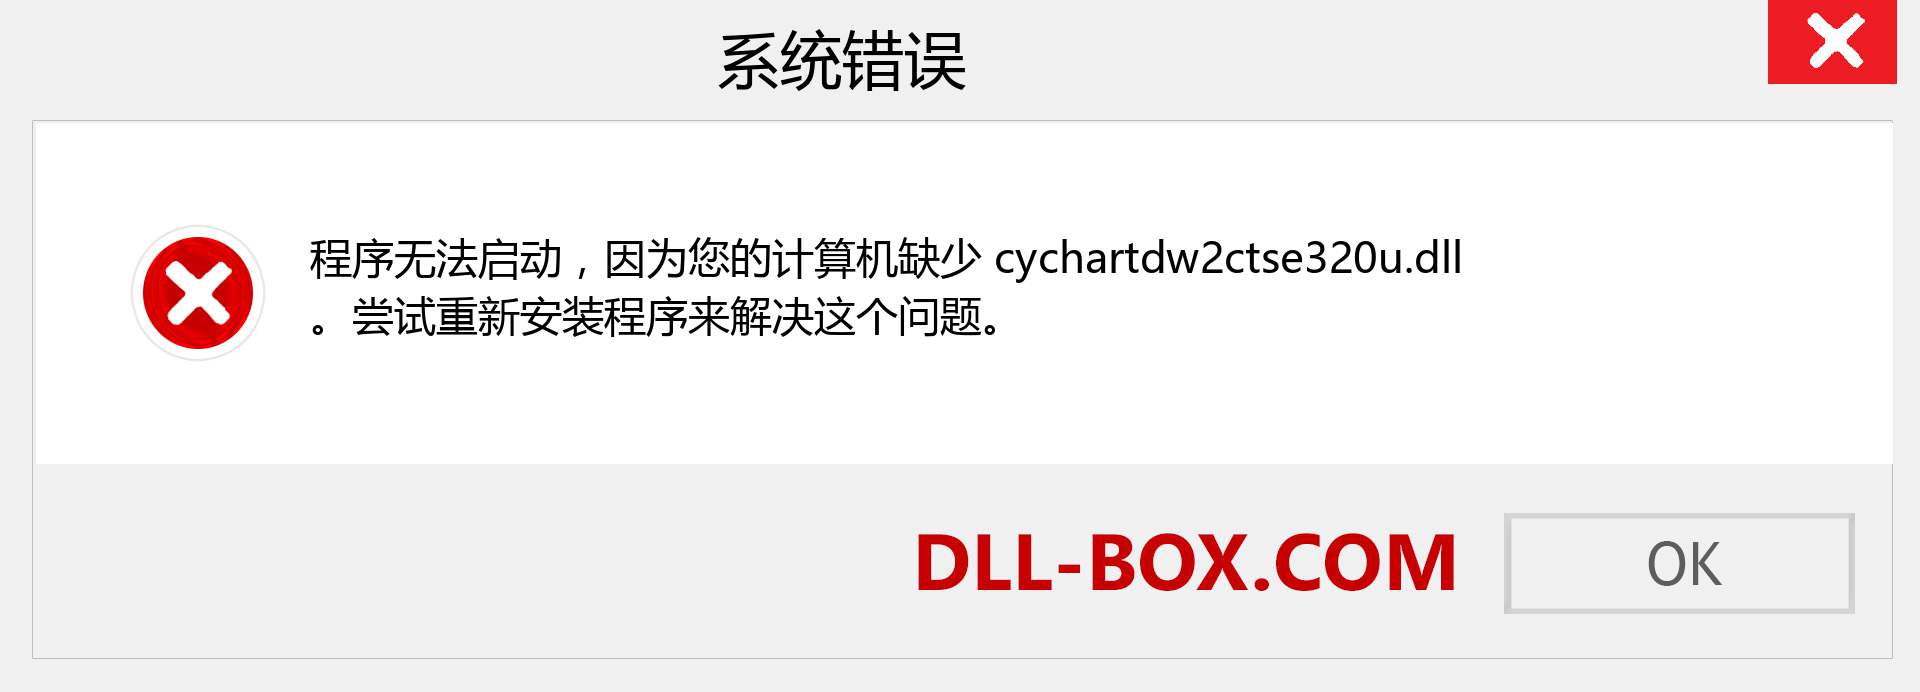 cychartdw2ctse320u.dll 文件丢失？。 适用于 Windows 7、8、10 的下载 - 修复 Windows、照片、图像上的 cychartdw2ctse320u dll 丢失错误